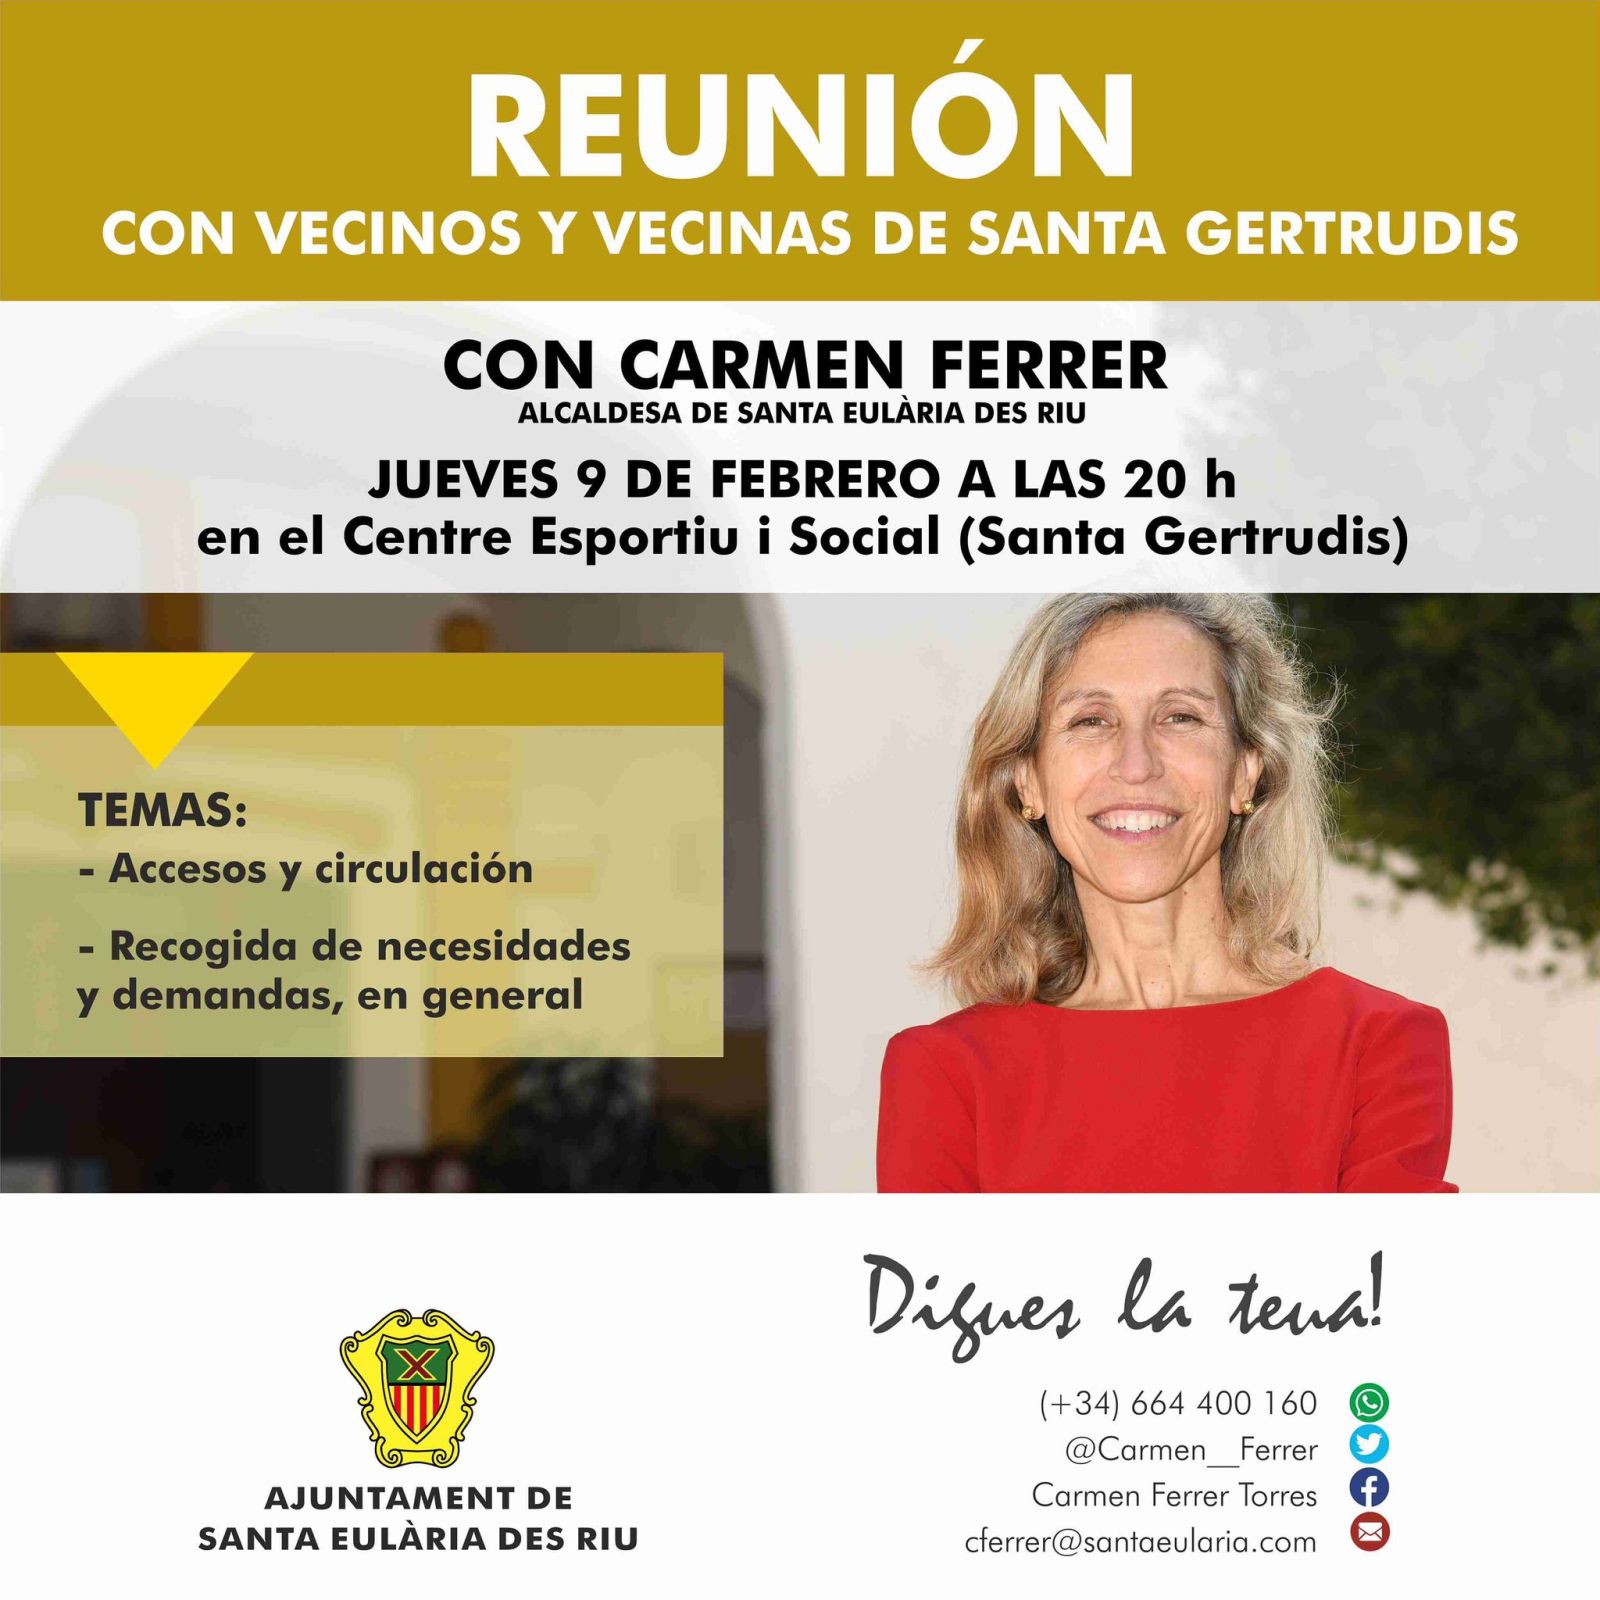 'Digues la Teua' en el Centro Deportivo y Social de Santa Gertrudis el 9 de febrero